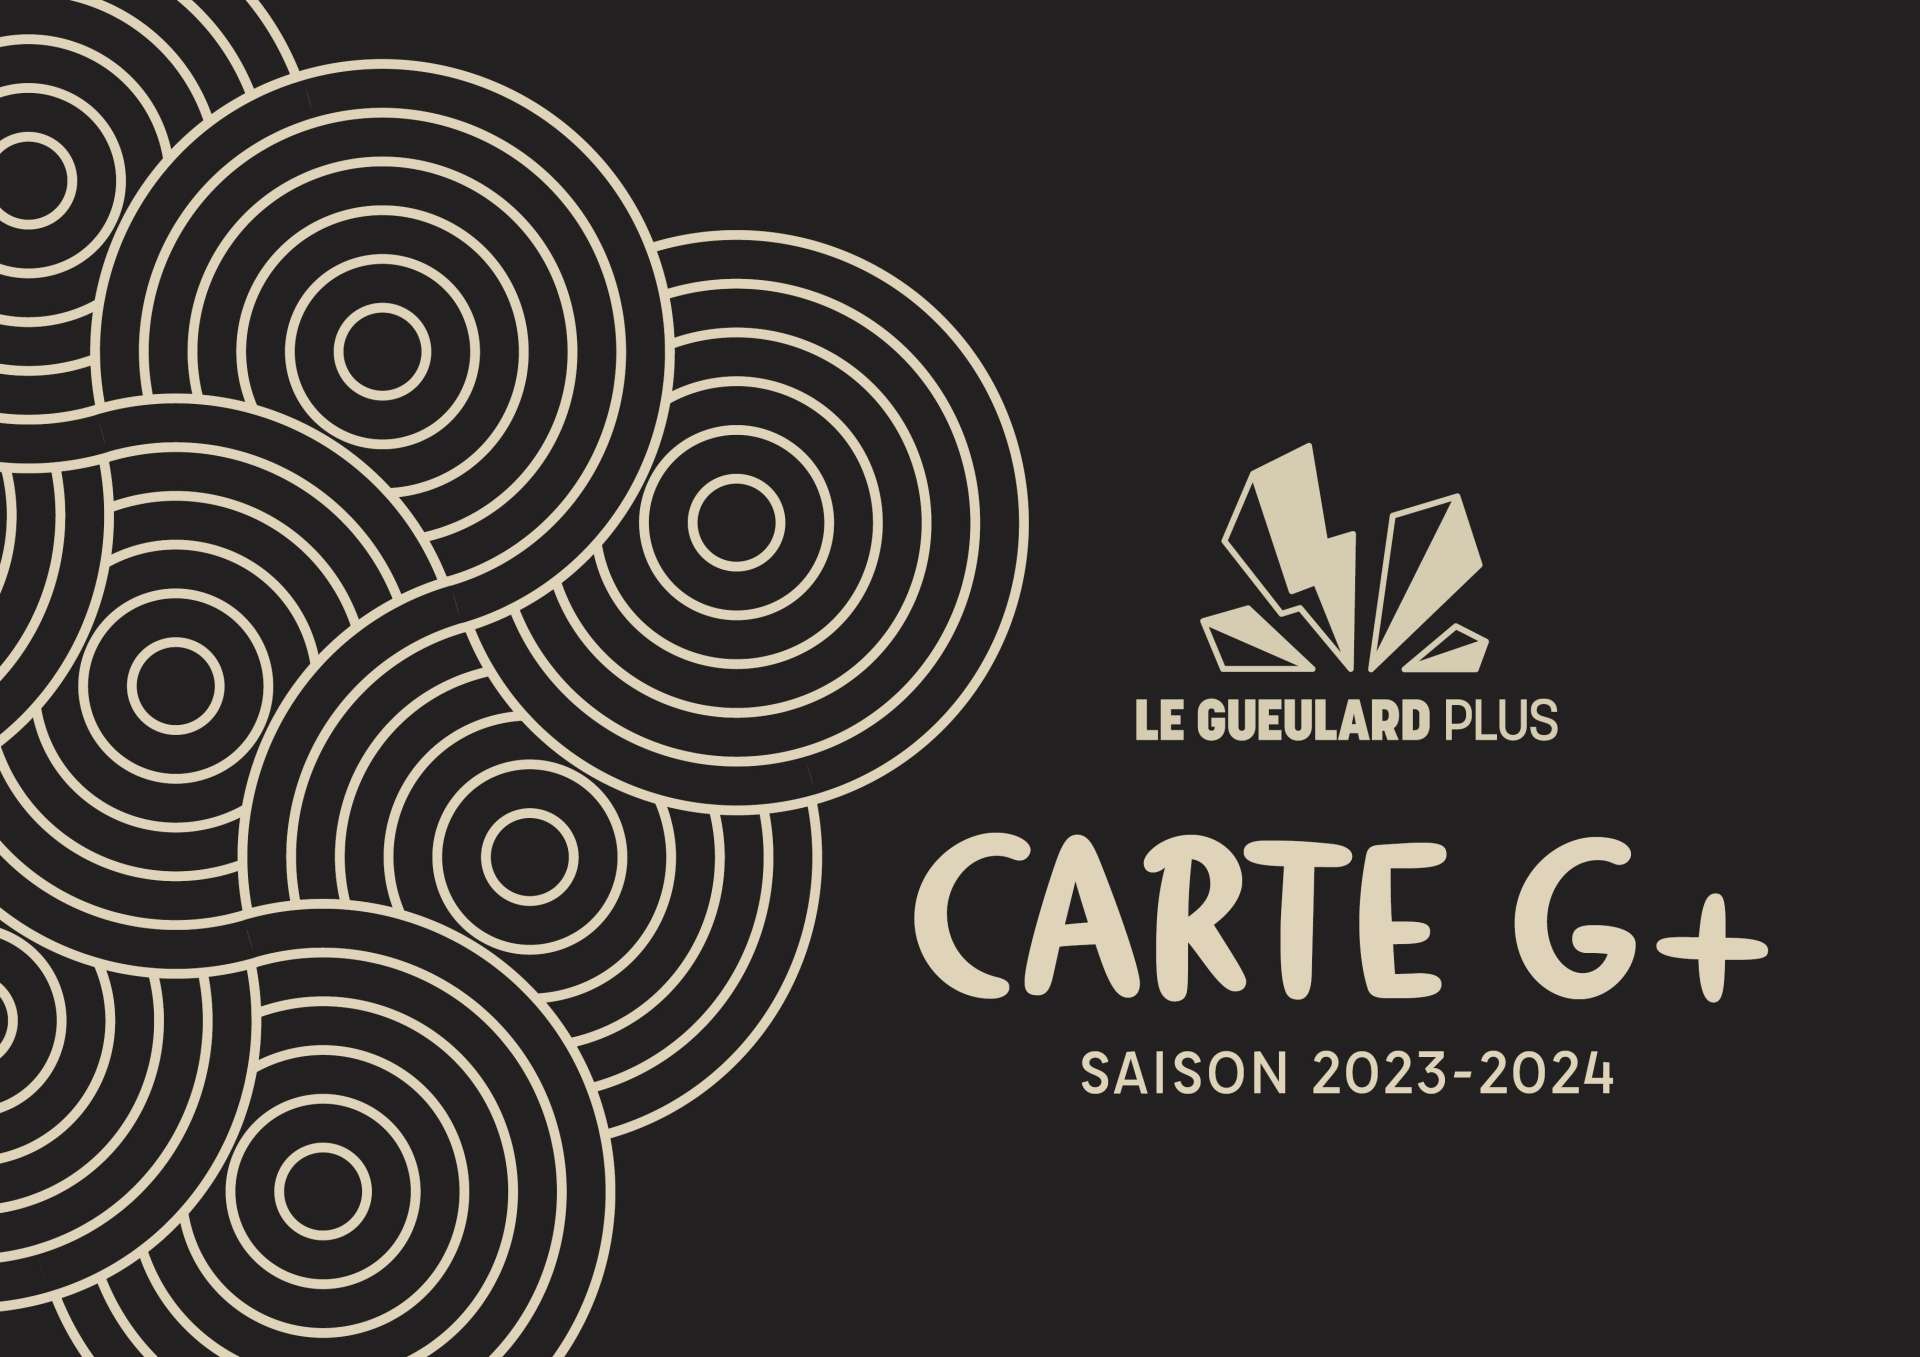 Carte G+ 2023-24